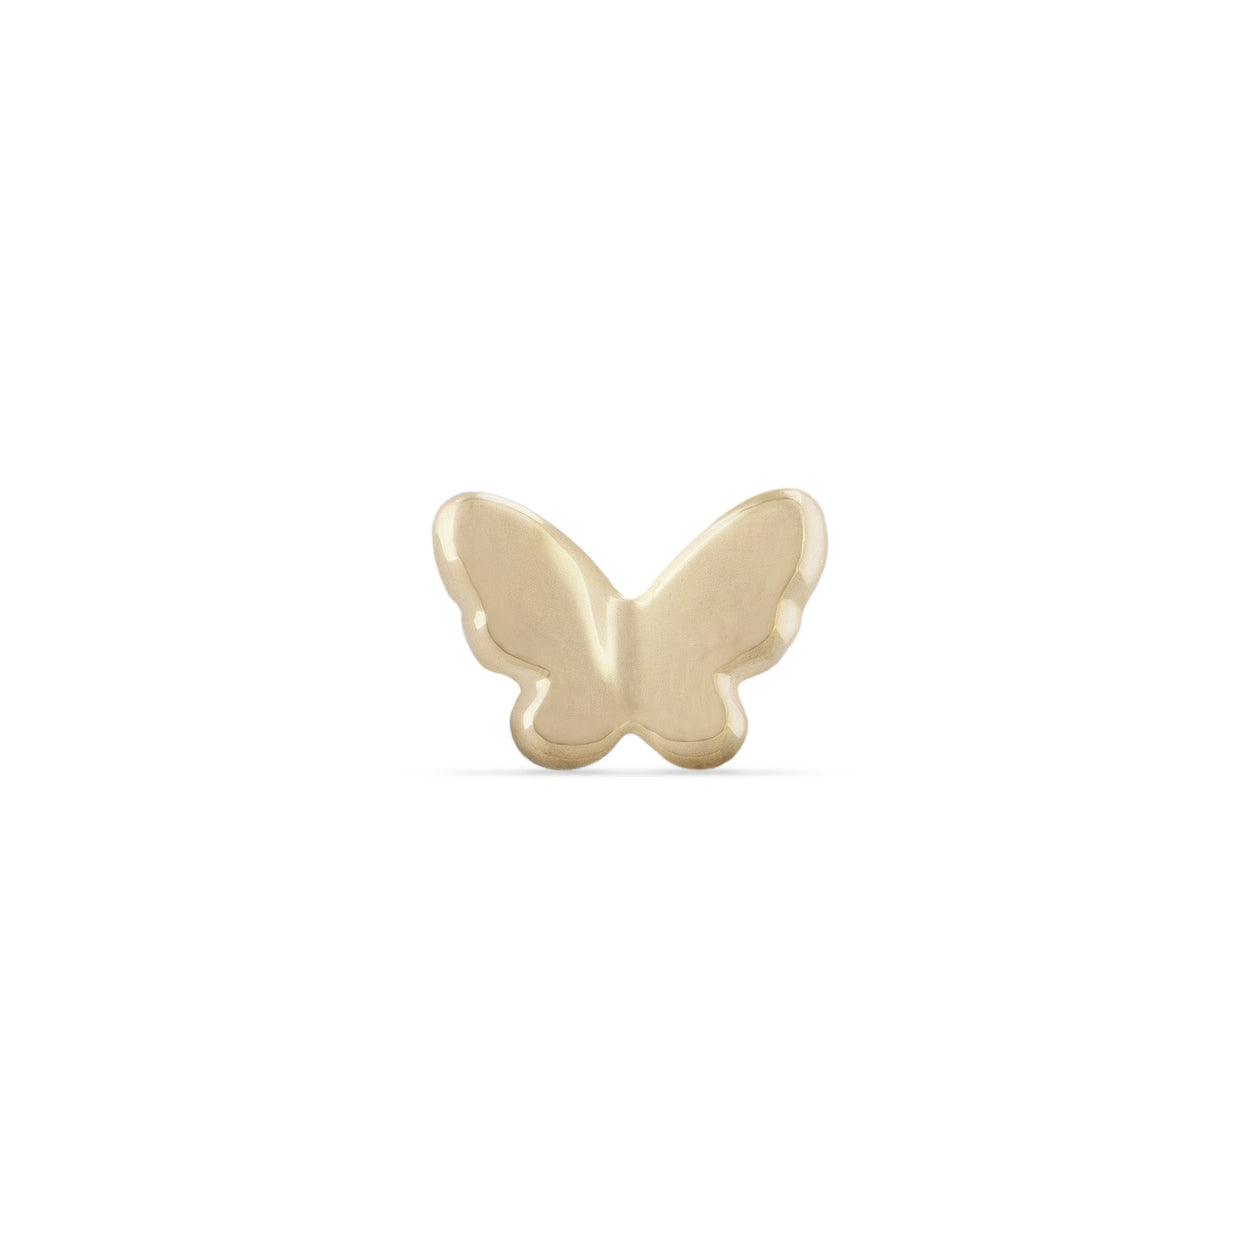 Solid 14K Gold Butterfly Ear Backs for Earrings / White or 